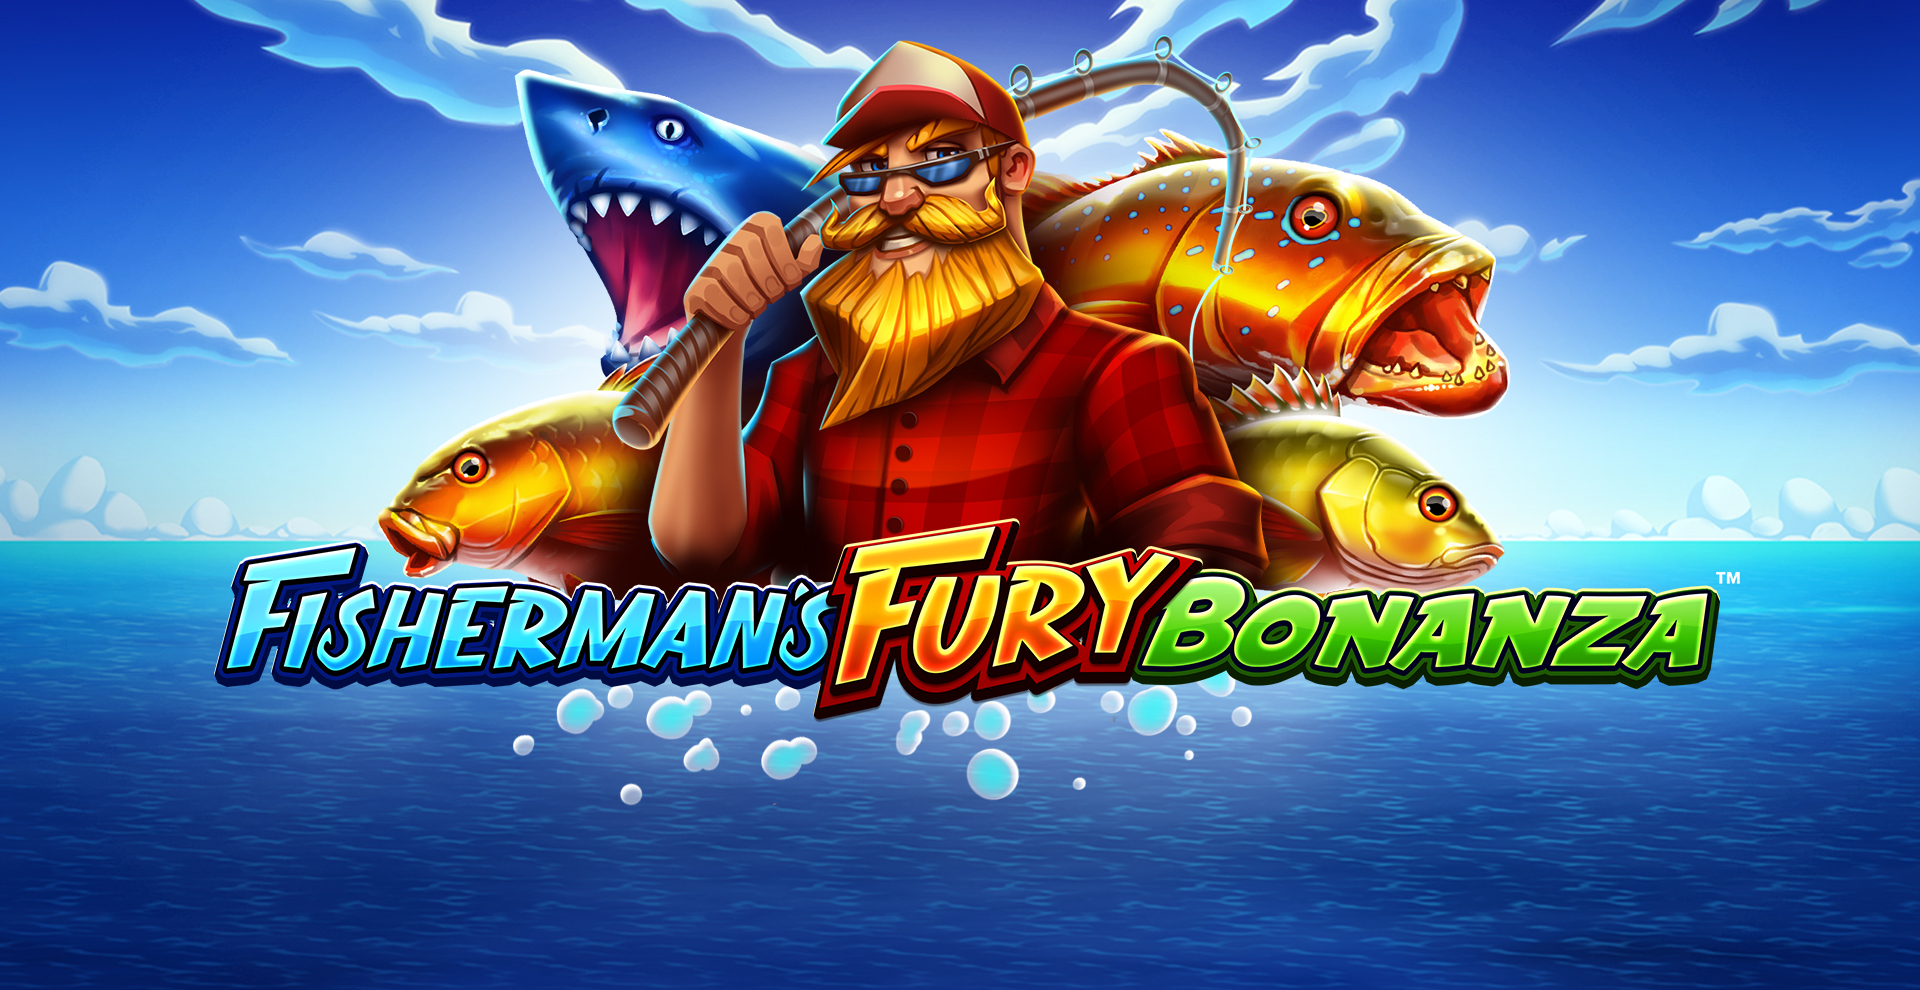 Fisherman’s Fury Bonanza™